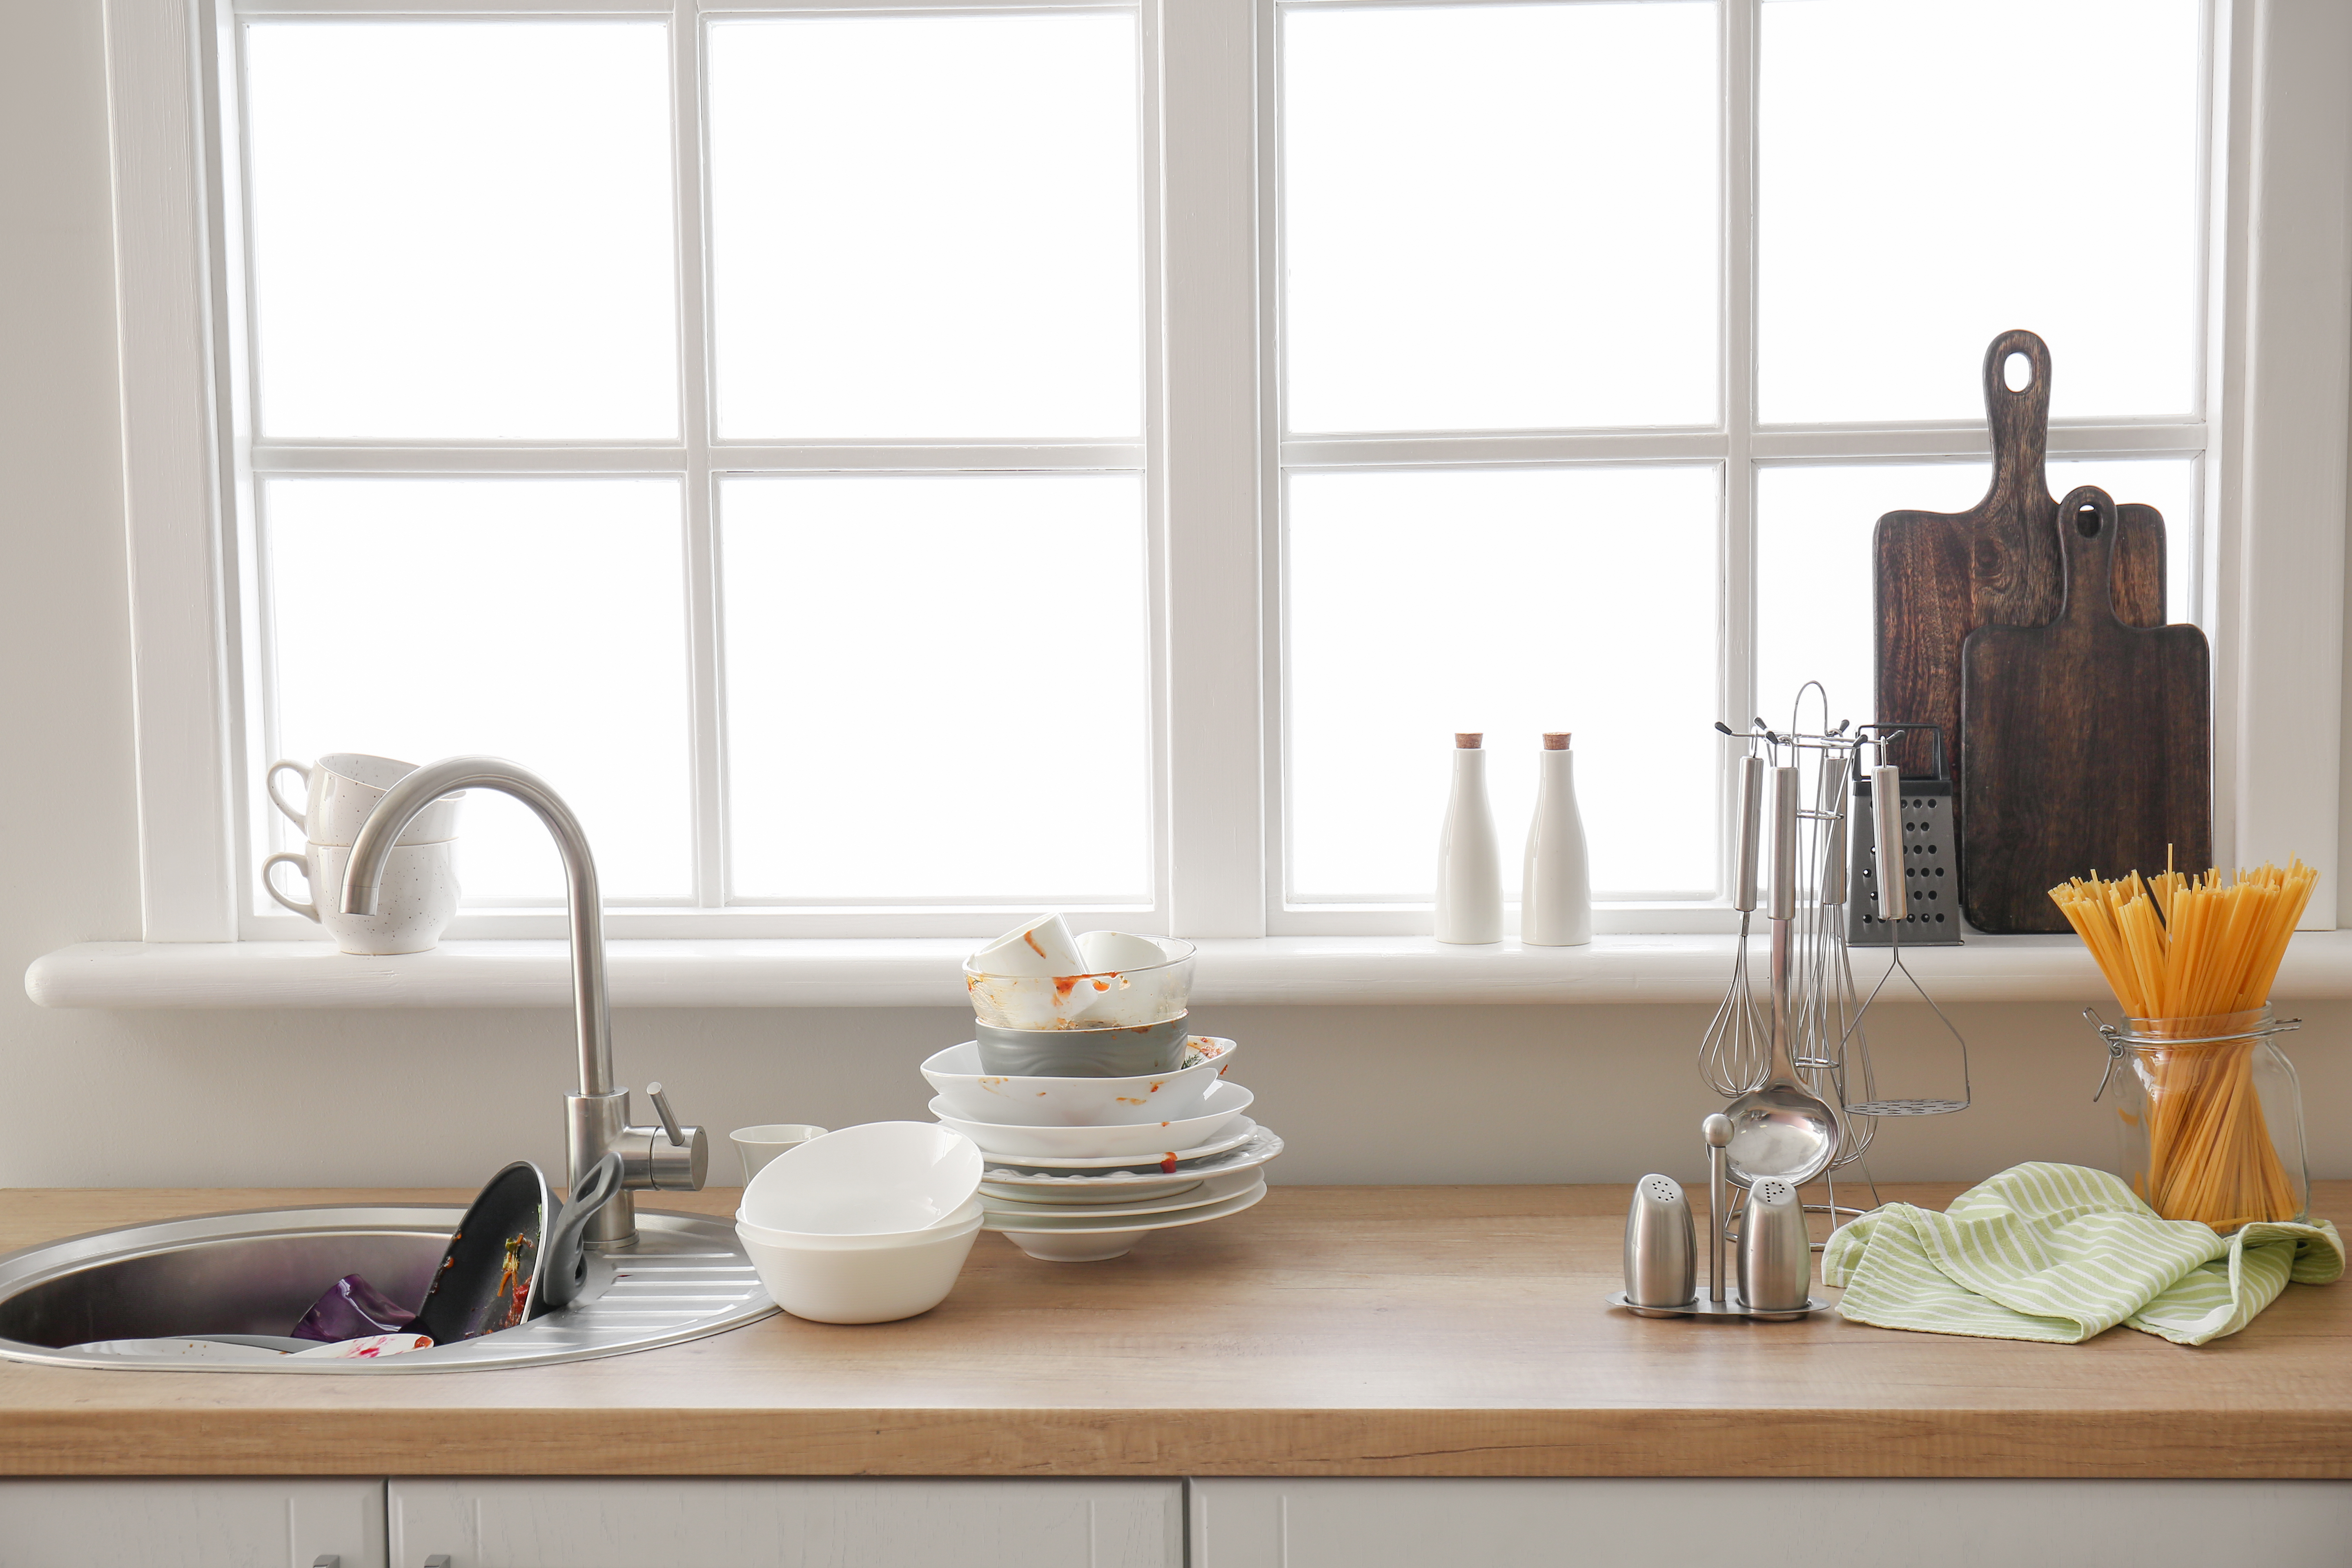 Vaisselle sale empilée à côté d'un évier de cuisine | Source : Shutterstock